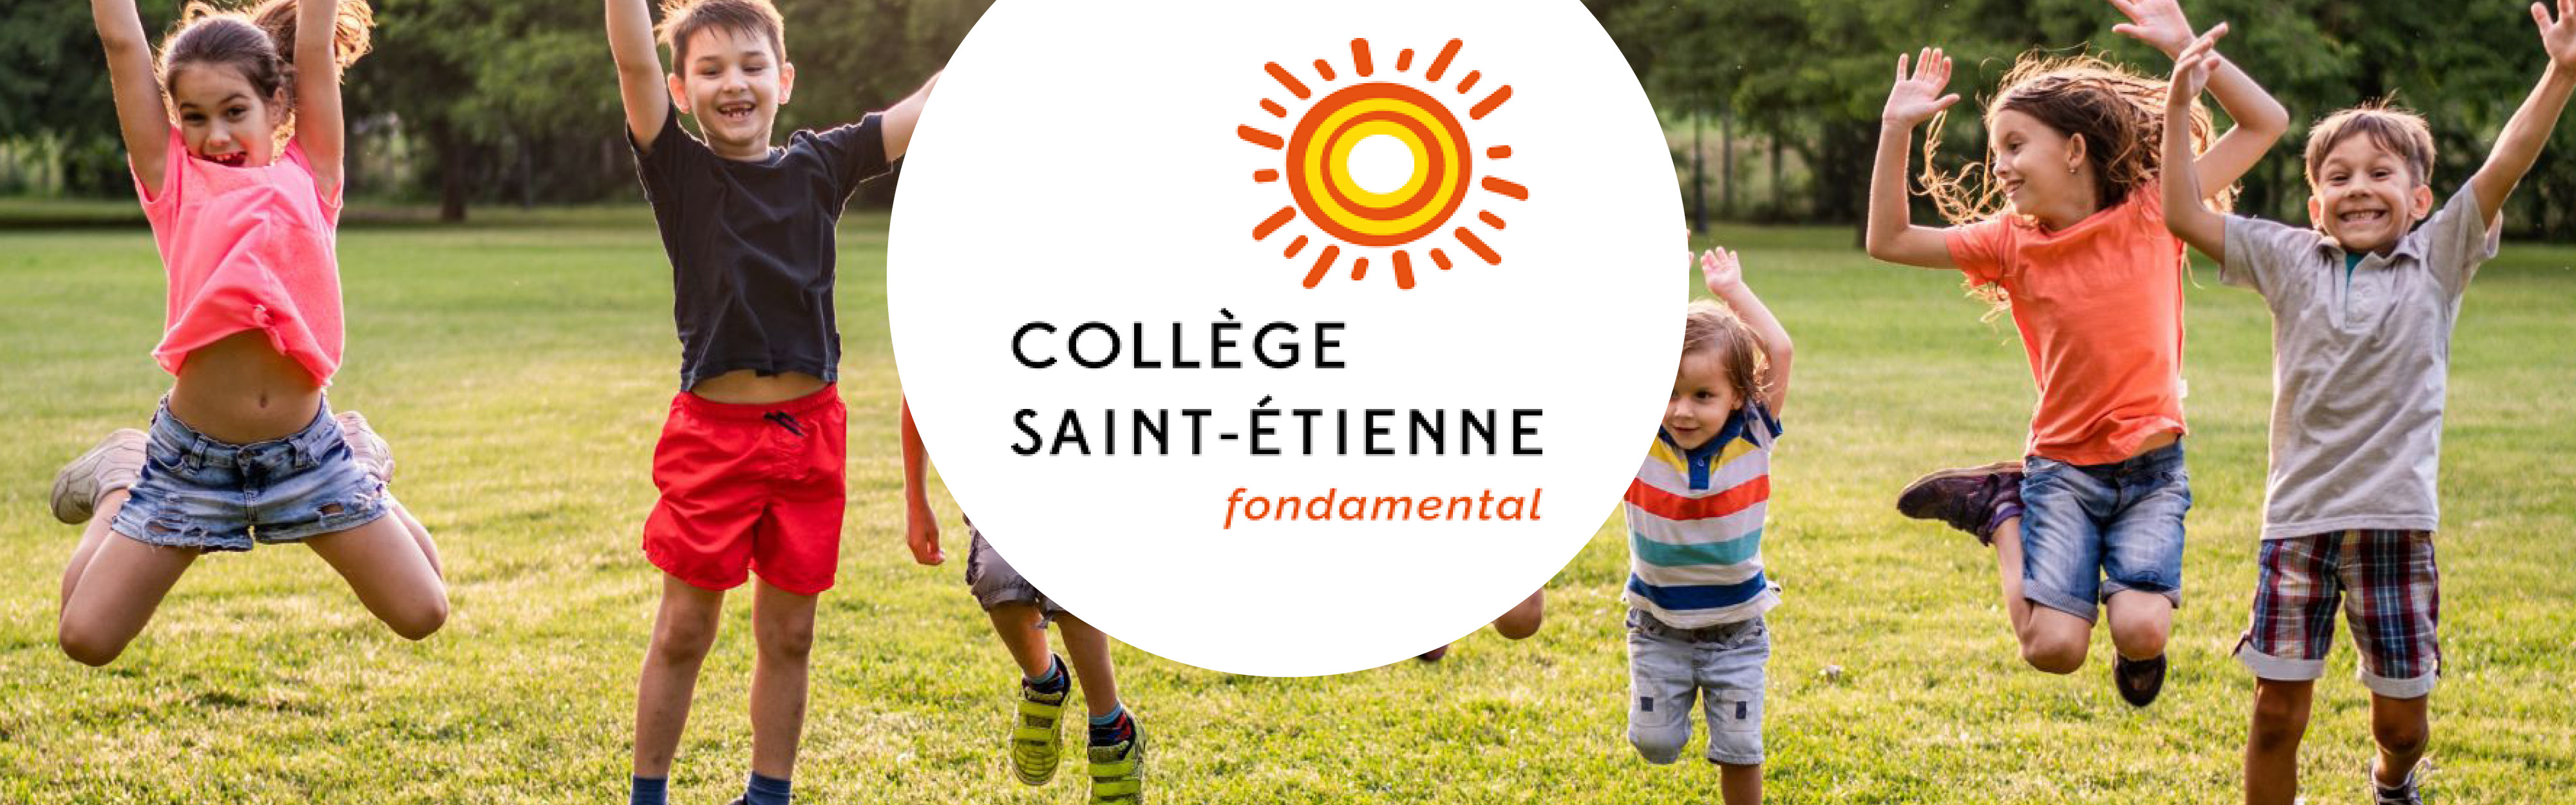 Court-Saint-Etienne - Collège Saint-Etienne